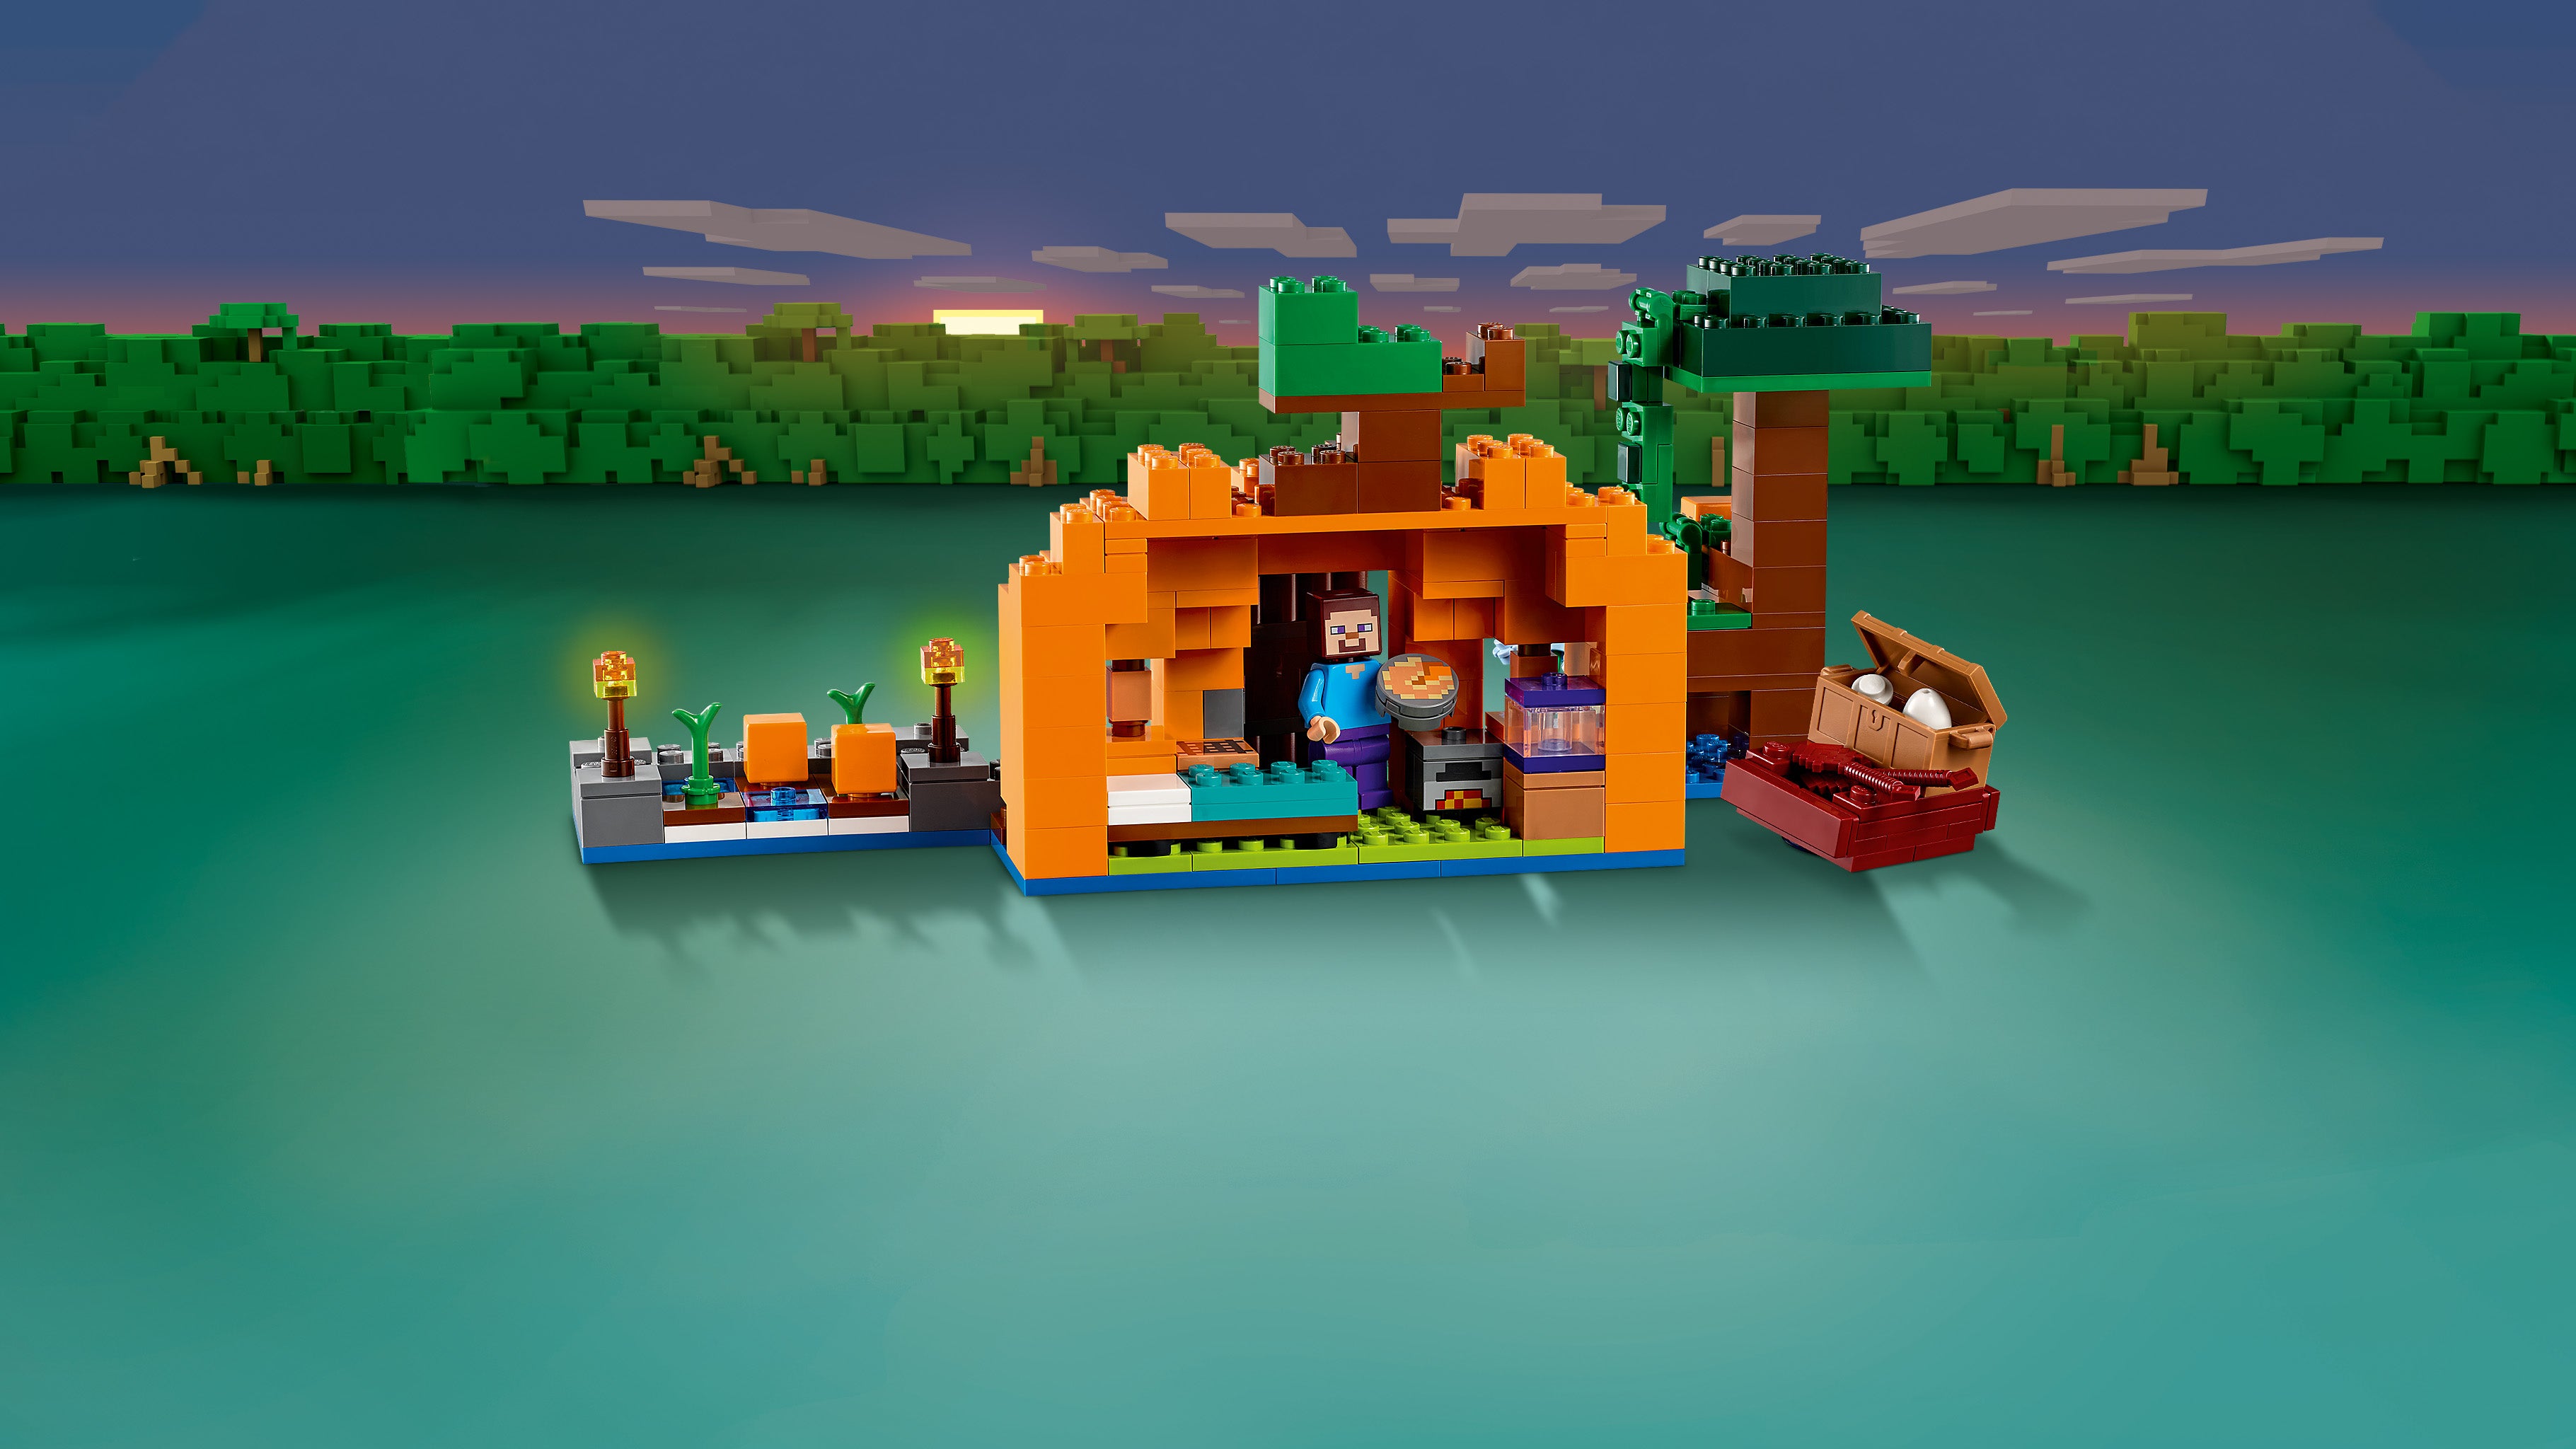 Lego 21248 The Pumpkin Farm